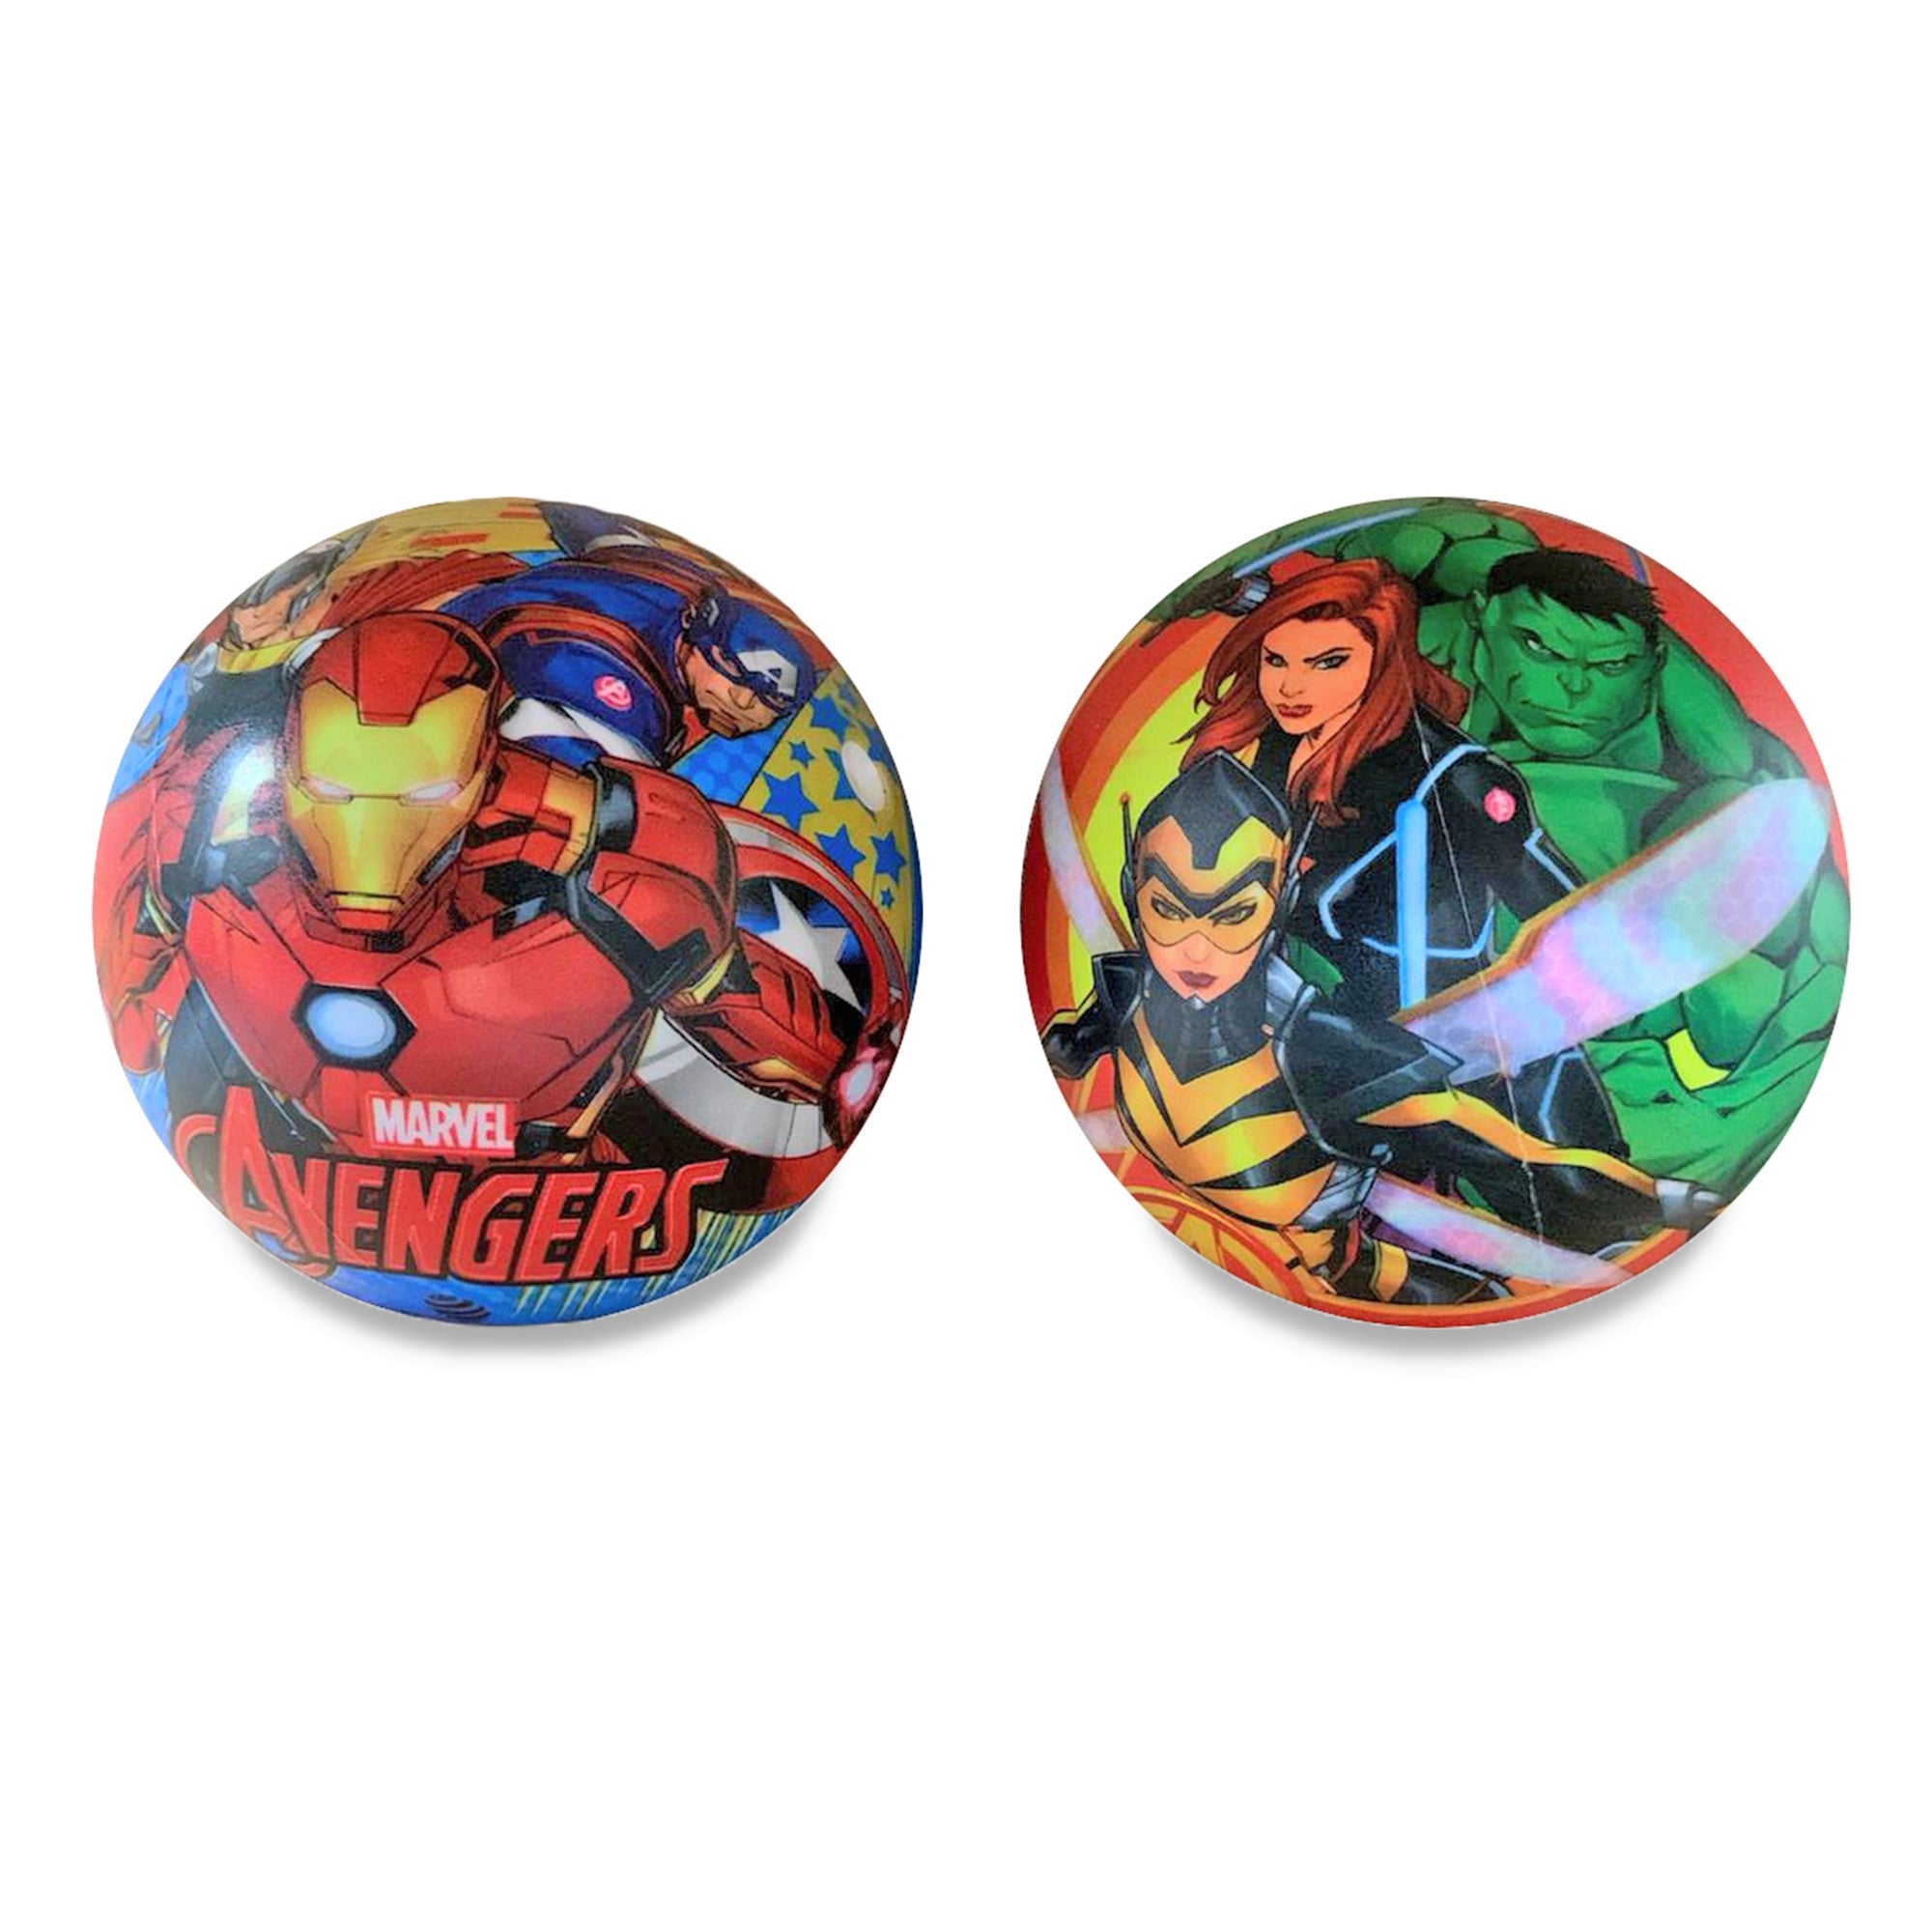 Pallone Mondo Marvel Avengers palla da gioco per bambini cartoons 3245